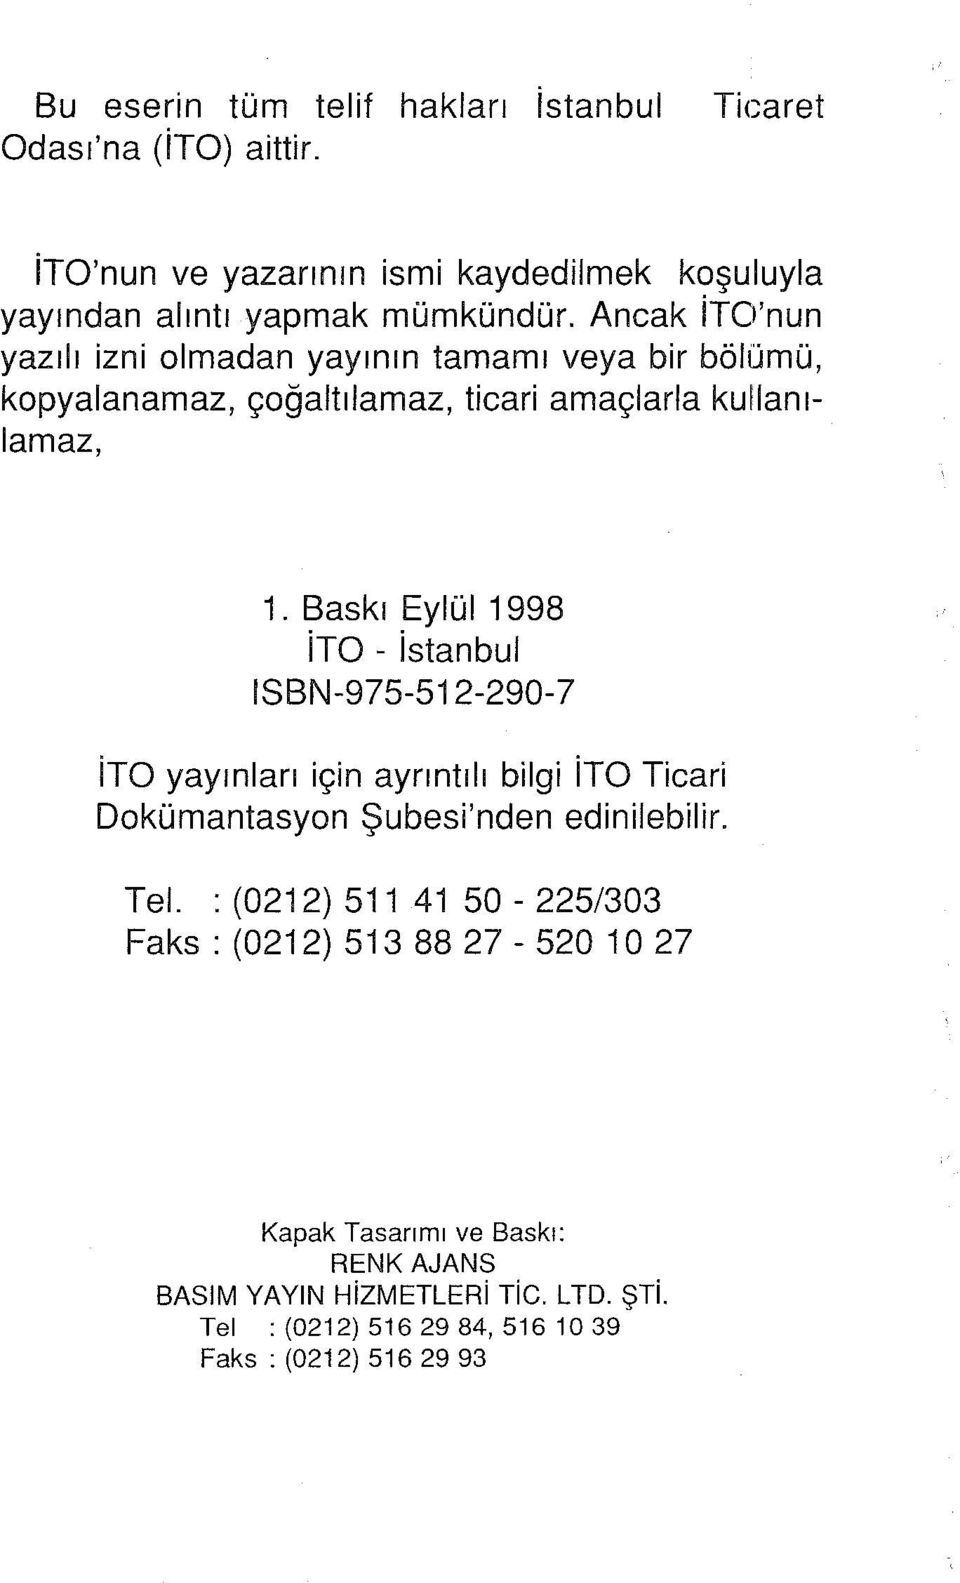 Baskı Eylül 1998 ito - istanbul ISBN-975-512-290-7 ito yayınları için ayrıntılı bilgi ito Ticari Dokümantasyon Şubesi'nden edinilebilir. Tel.